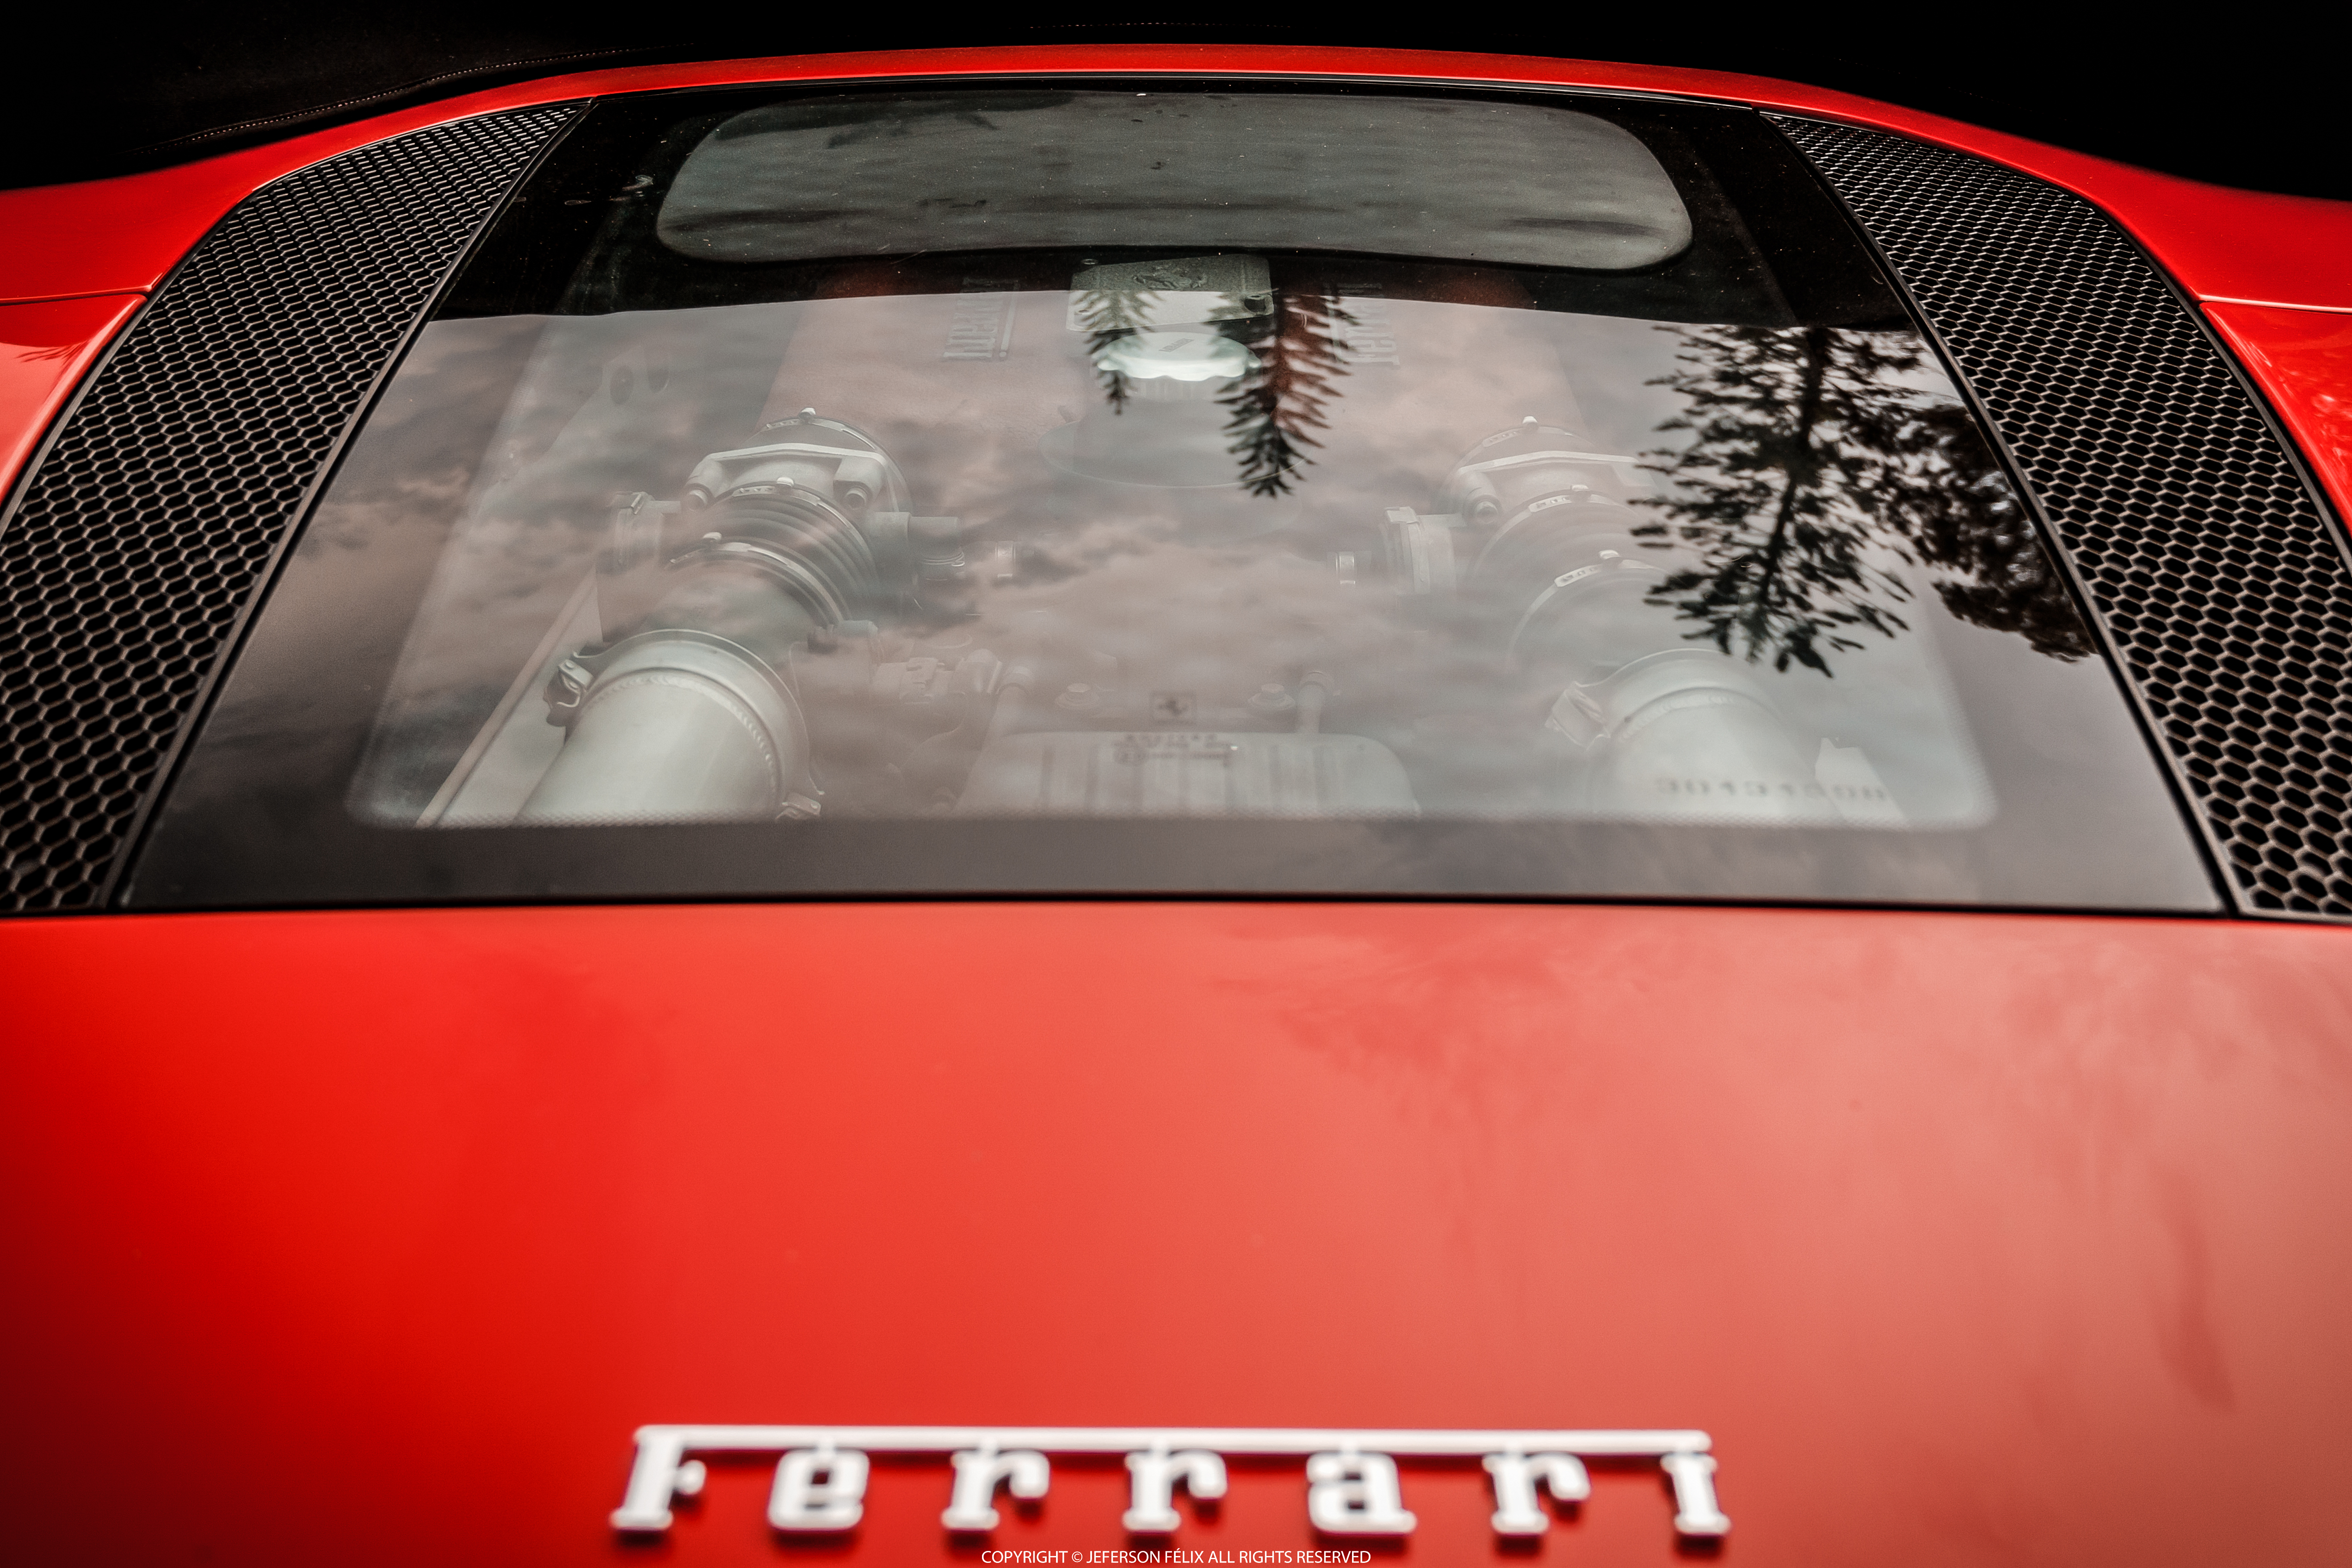 Descargar fondos de escritorio de Ferrari 360 HD